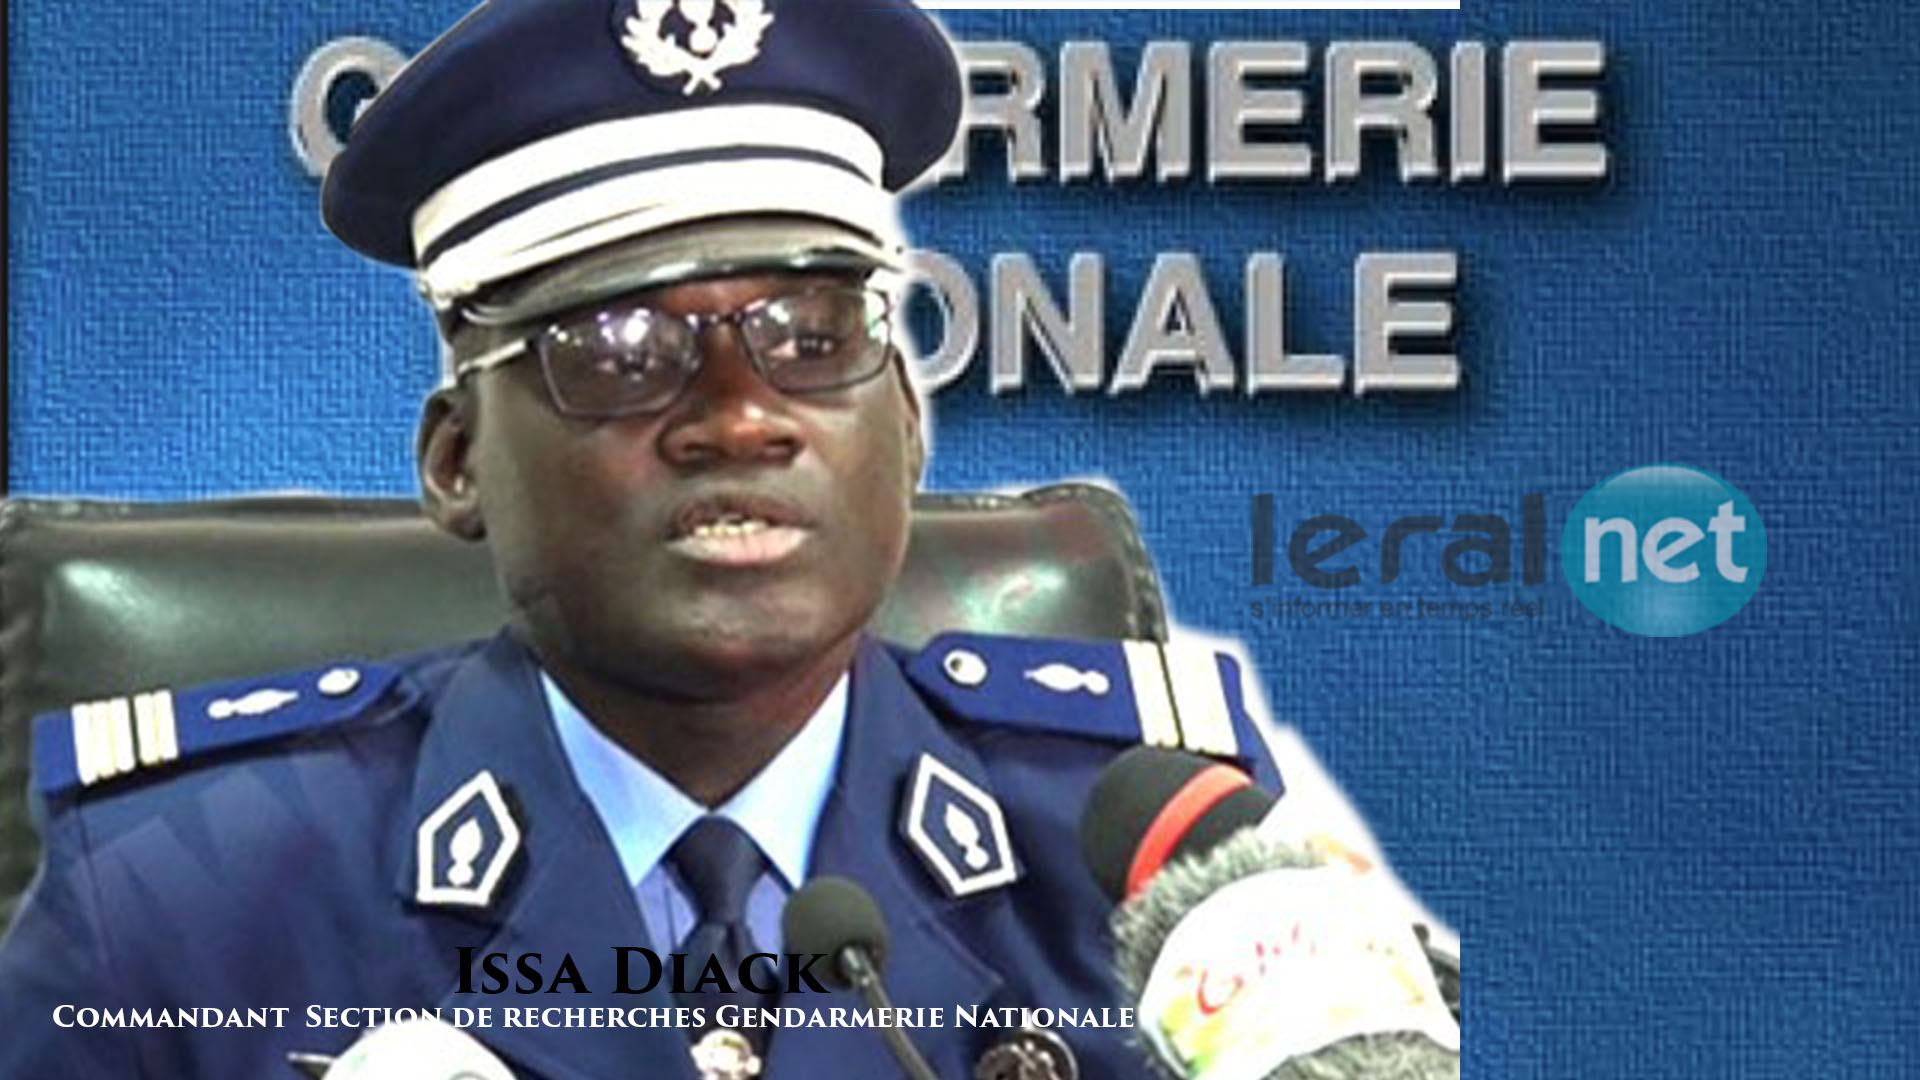 Portrait : Lieutenant-colonel Issa Diack, Commandant SR Gendarmerie nationale, « The Equalizer », l'homme qui ne transige pas